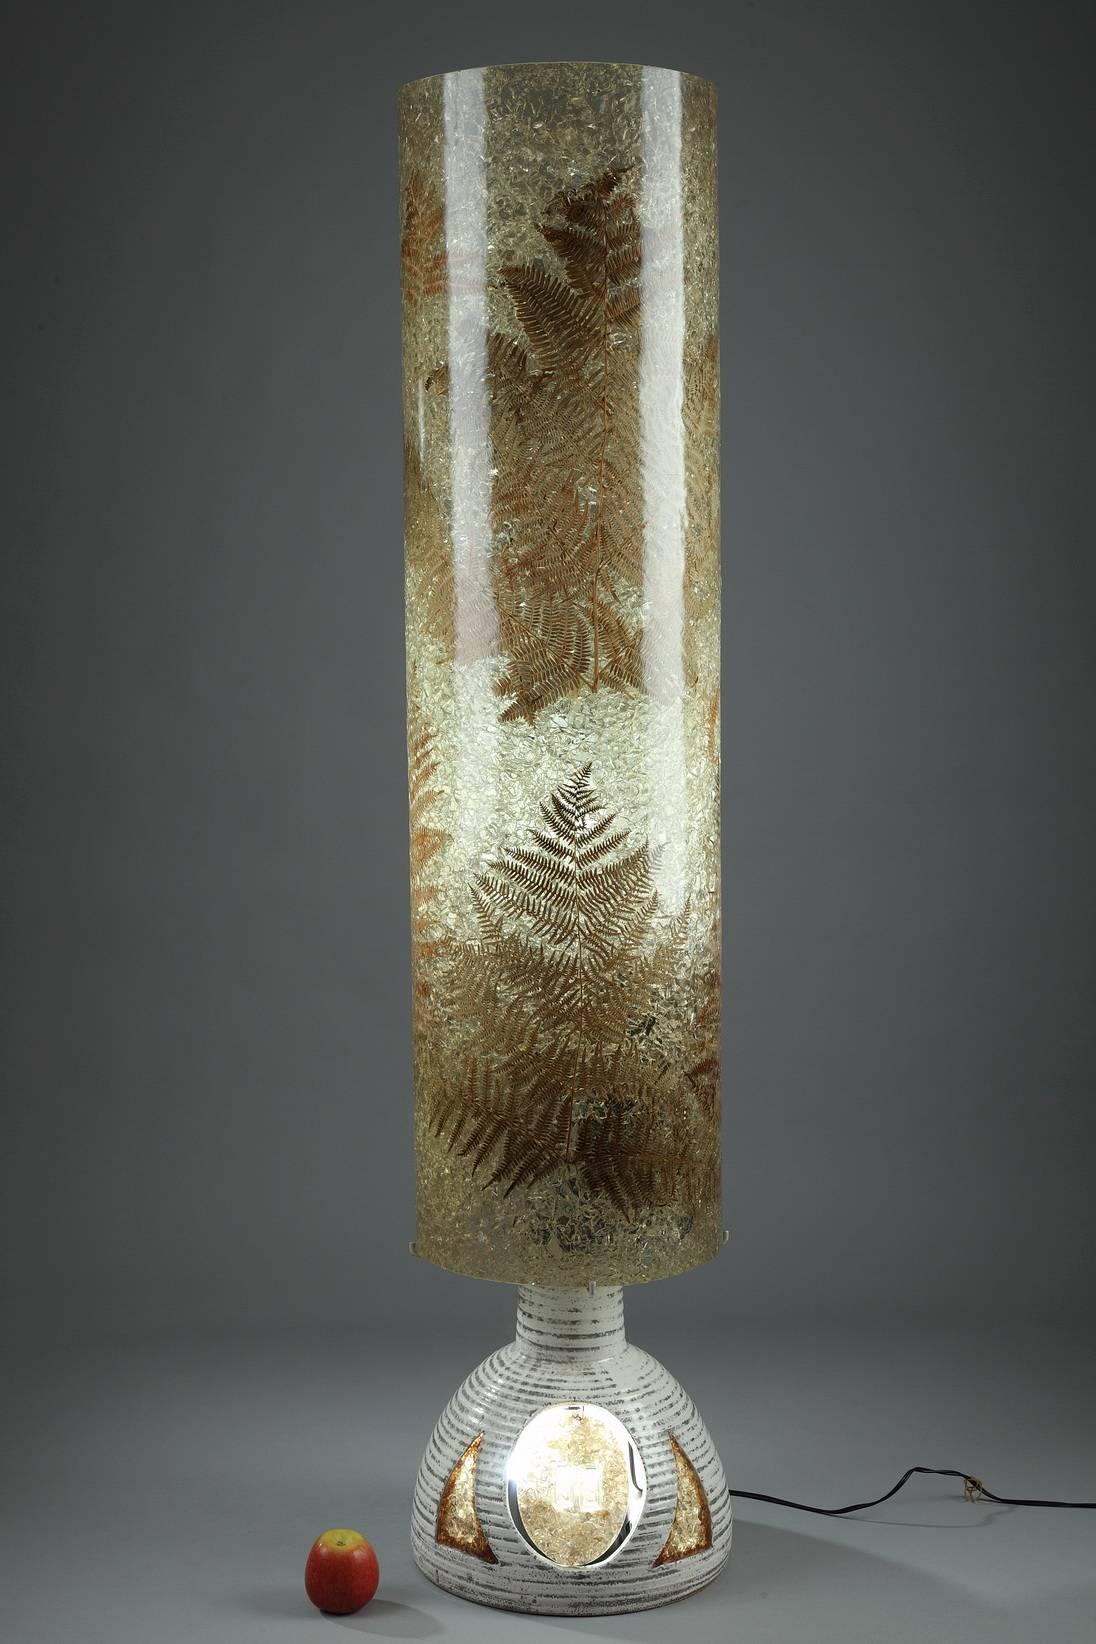 Lampadaire des ateliers Accolay composé d'un pied en céramique et d'un abat-jour en résine décoré de fougères. Il y a deux ampoules, une dans l'abat-jour et l'autre dans le pied en céramique,

vers 1970.
Dimensions : D 12.2 in, H 57.5